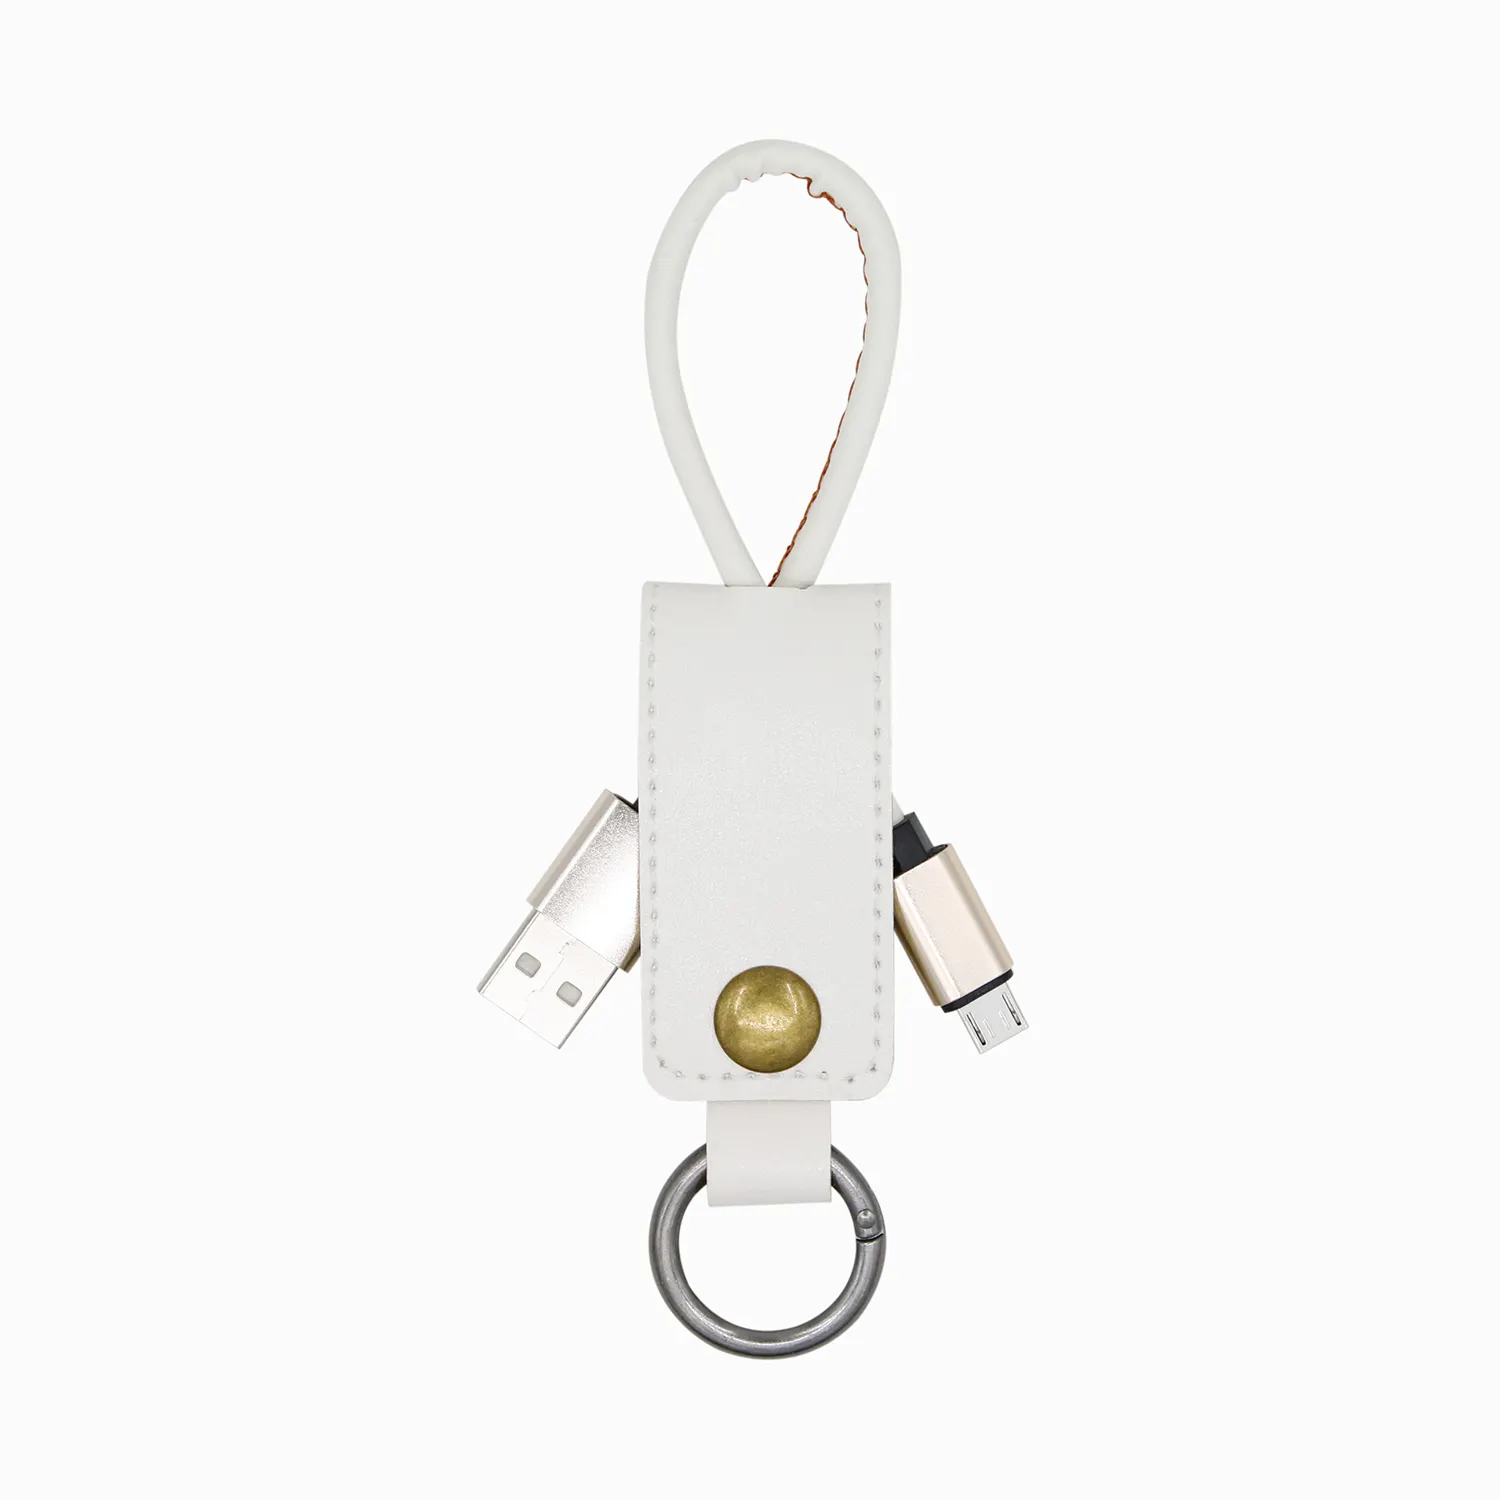 Promosyon hediye USB Set evrensel cep telefonu şarj cihazı için anahtarlık siyah 3 In 1 çok anahtarlık deri şarj kablosu